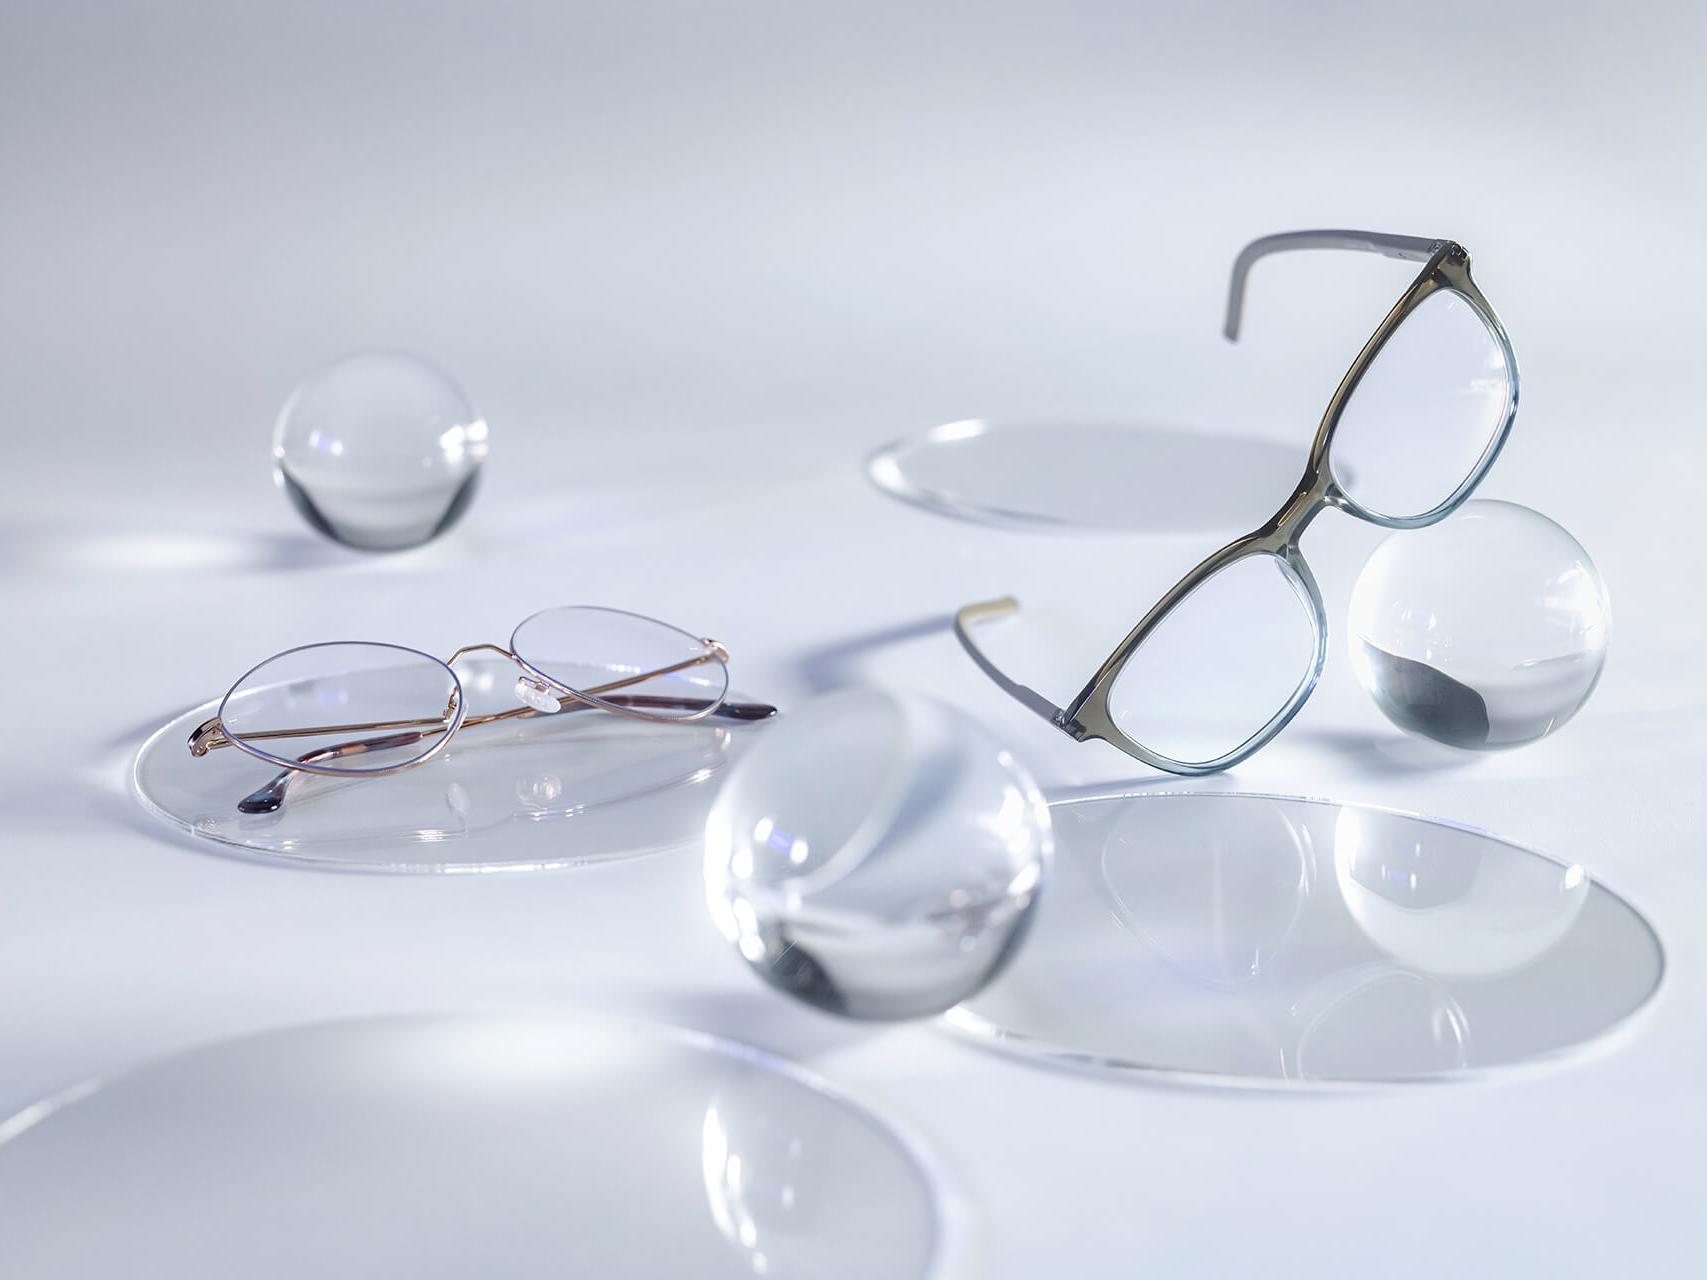 Glasögon med ZEISS-glas försedda med DuraVision® Silver-ytbehandling, utan reflexer jämfört med de omgivande glasrundlarna.